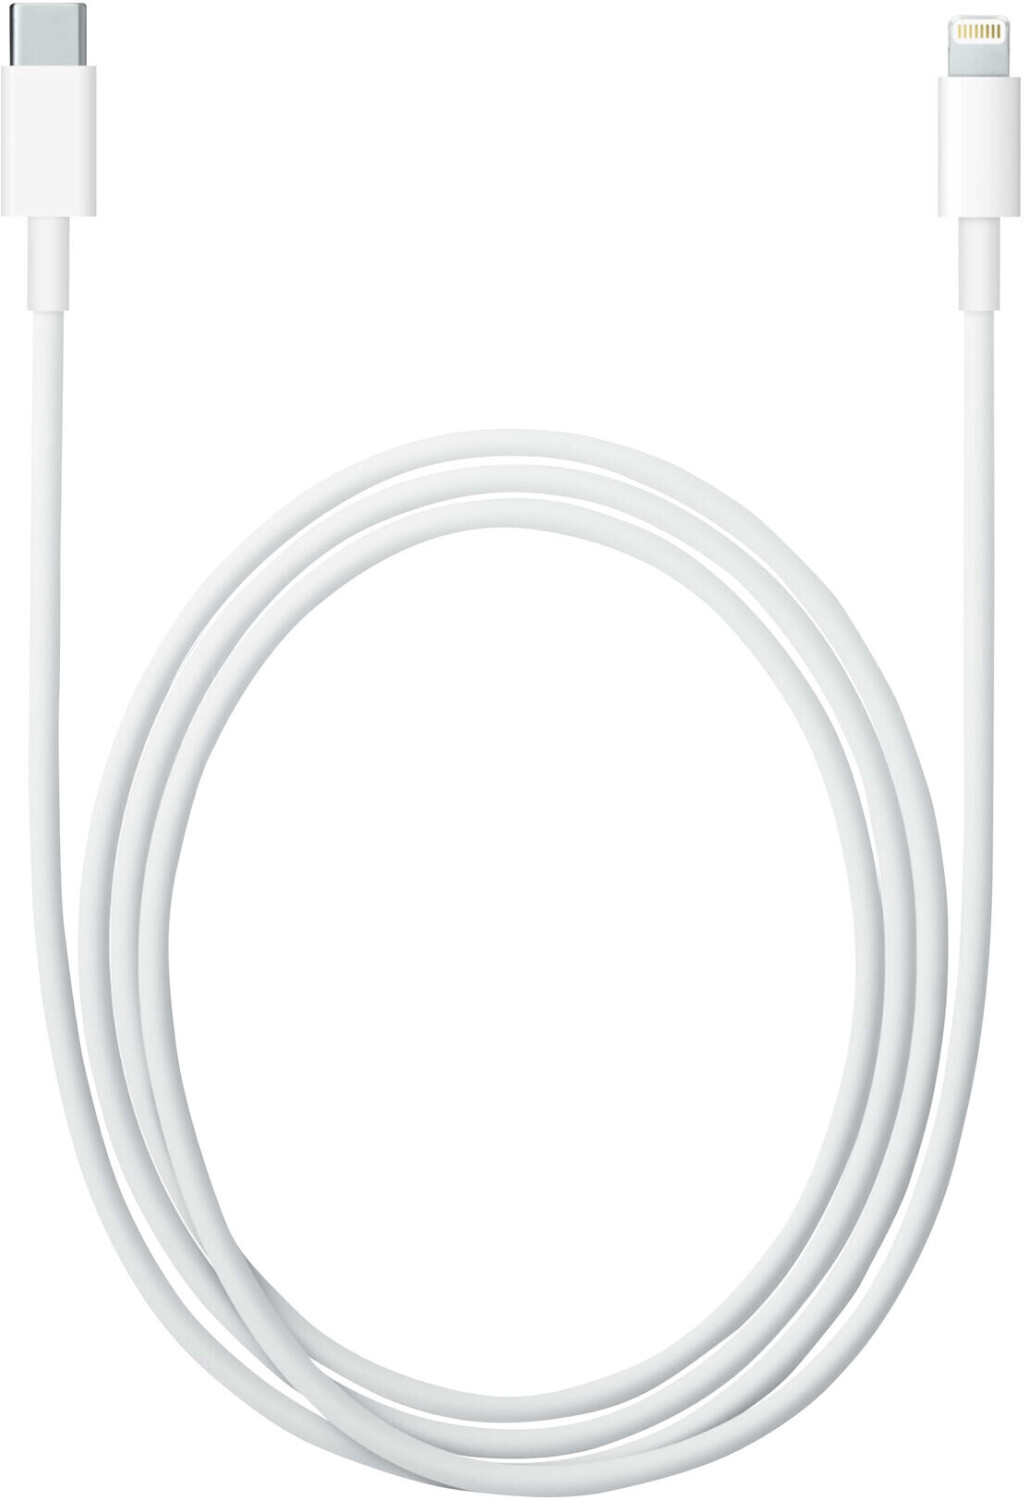 Câble Apple USB/lightning plat: évite de faire des noeuds 1m blanc